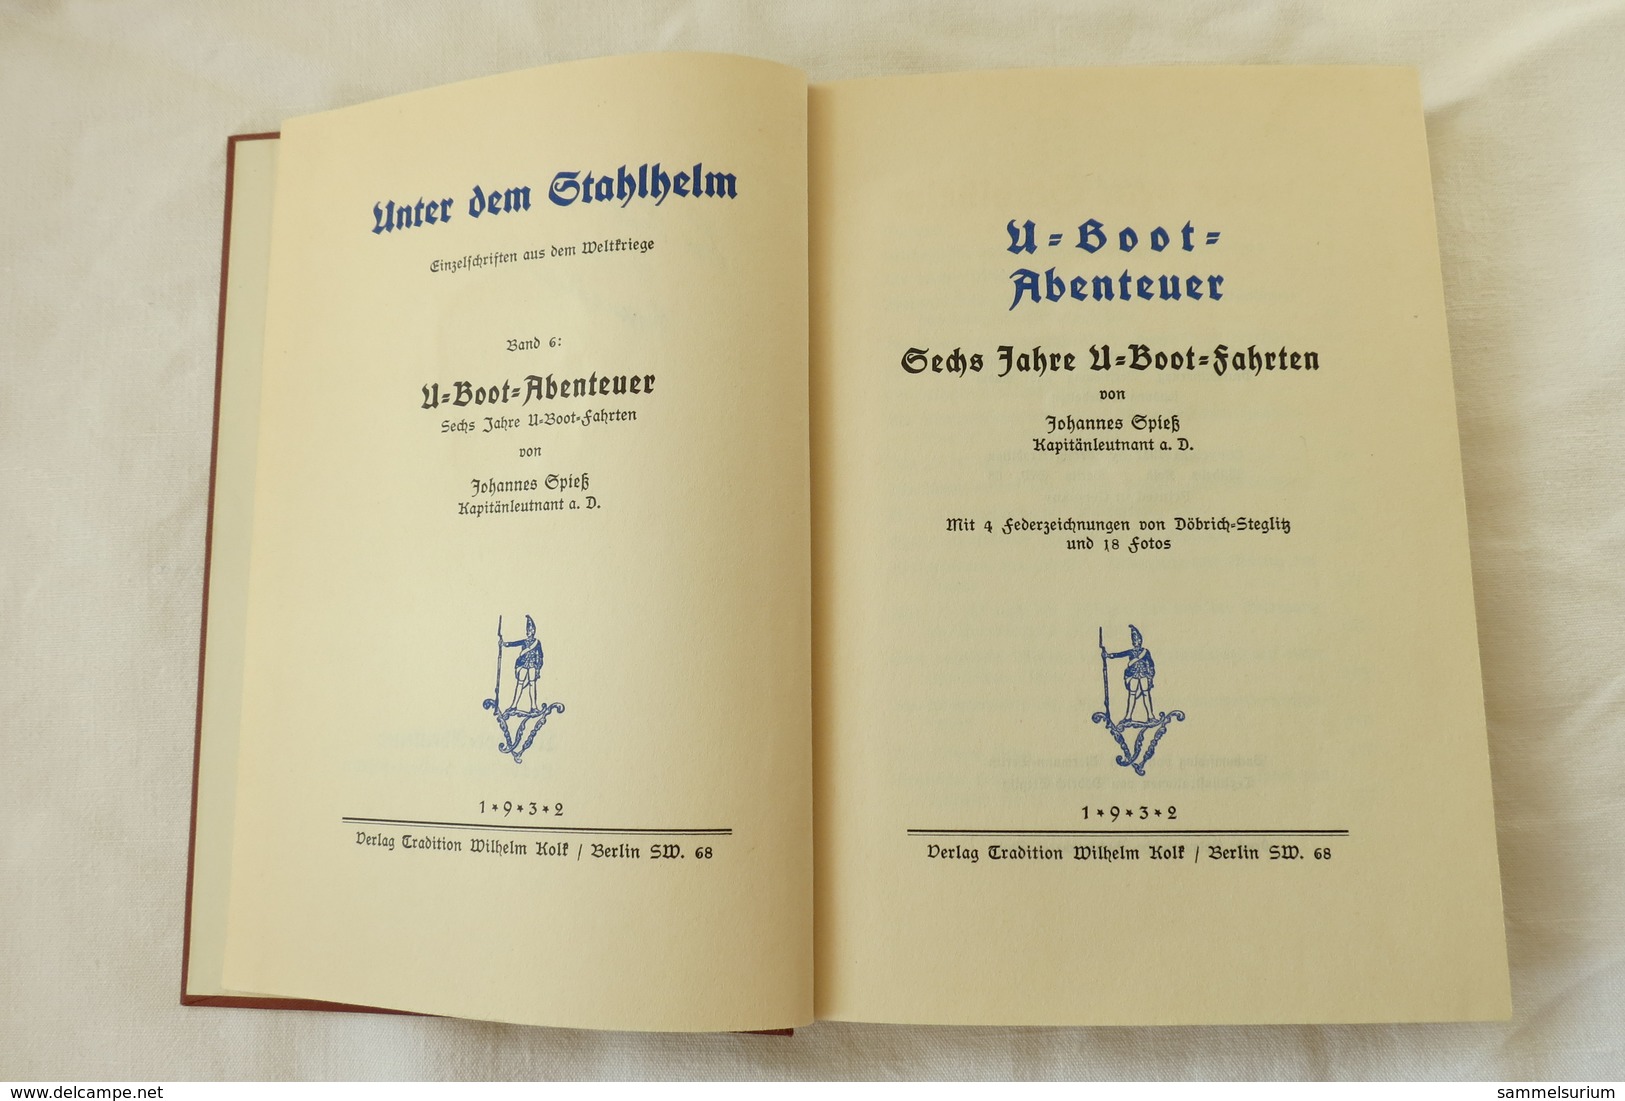 Johannes Spieß "U-Boot-Abenteuer, 6 Jahre U-Boot-Fahrten", Band 6 Aus Der Reihe "Unter Dem Stahlhelm" Von 1932 - Militär & Polizei